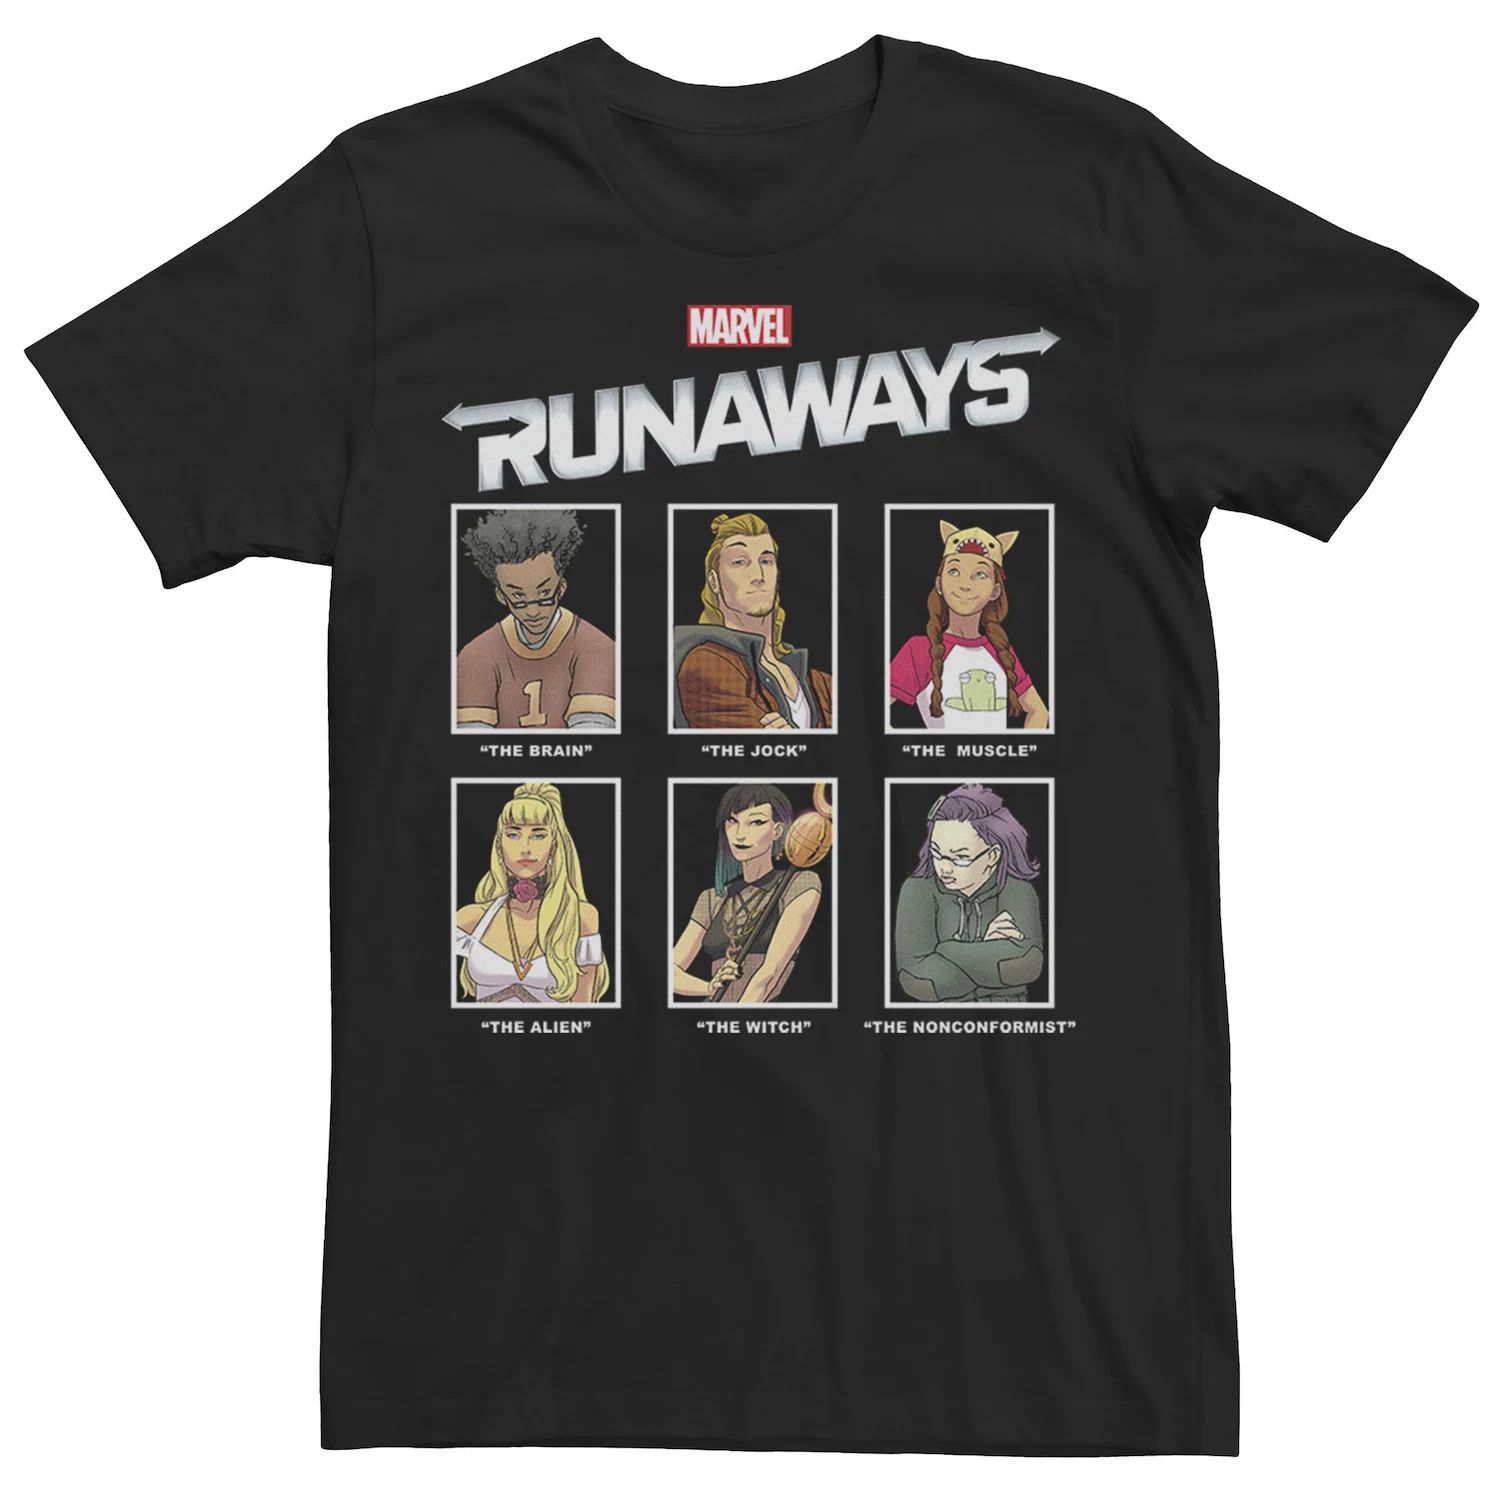 Мужская футболка Runaways Yearbook с портретными панелями и графическим рисунком Marvel мужская худи с графическим плакатом runaways group marvel